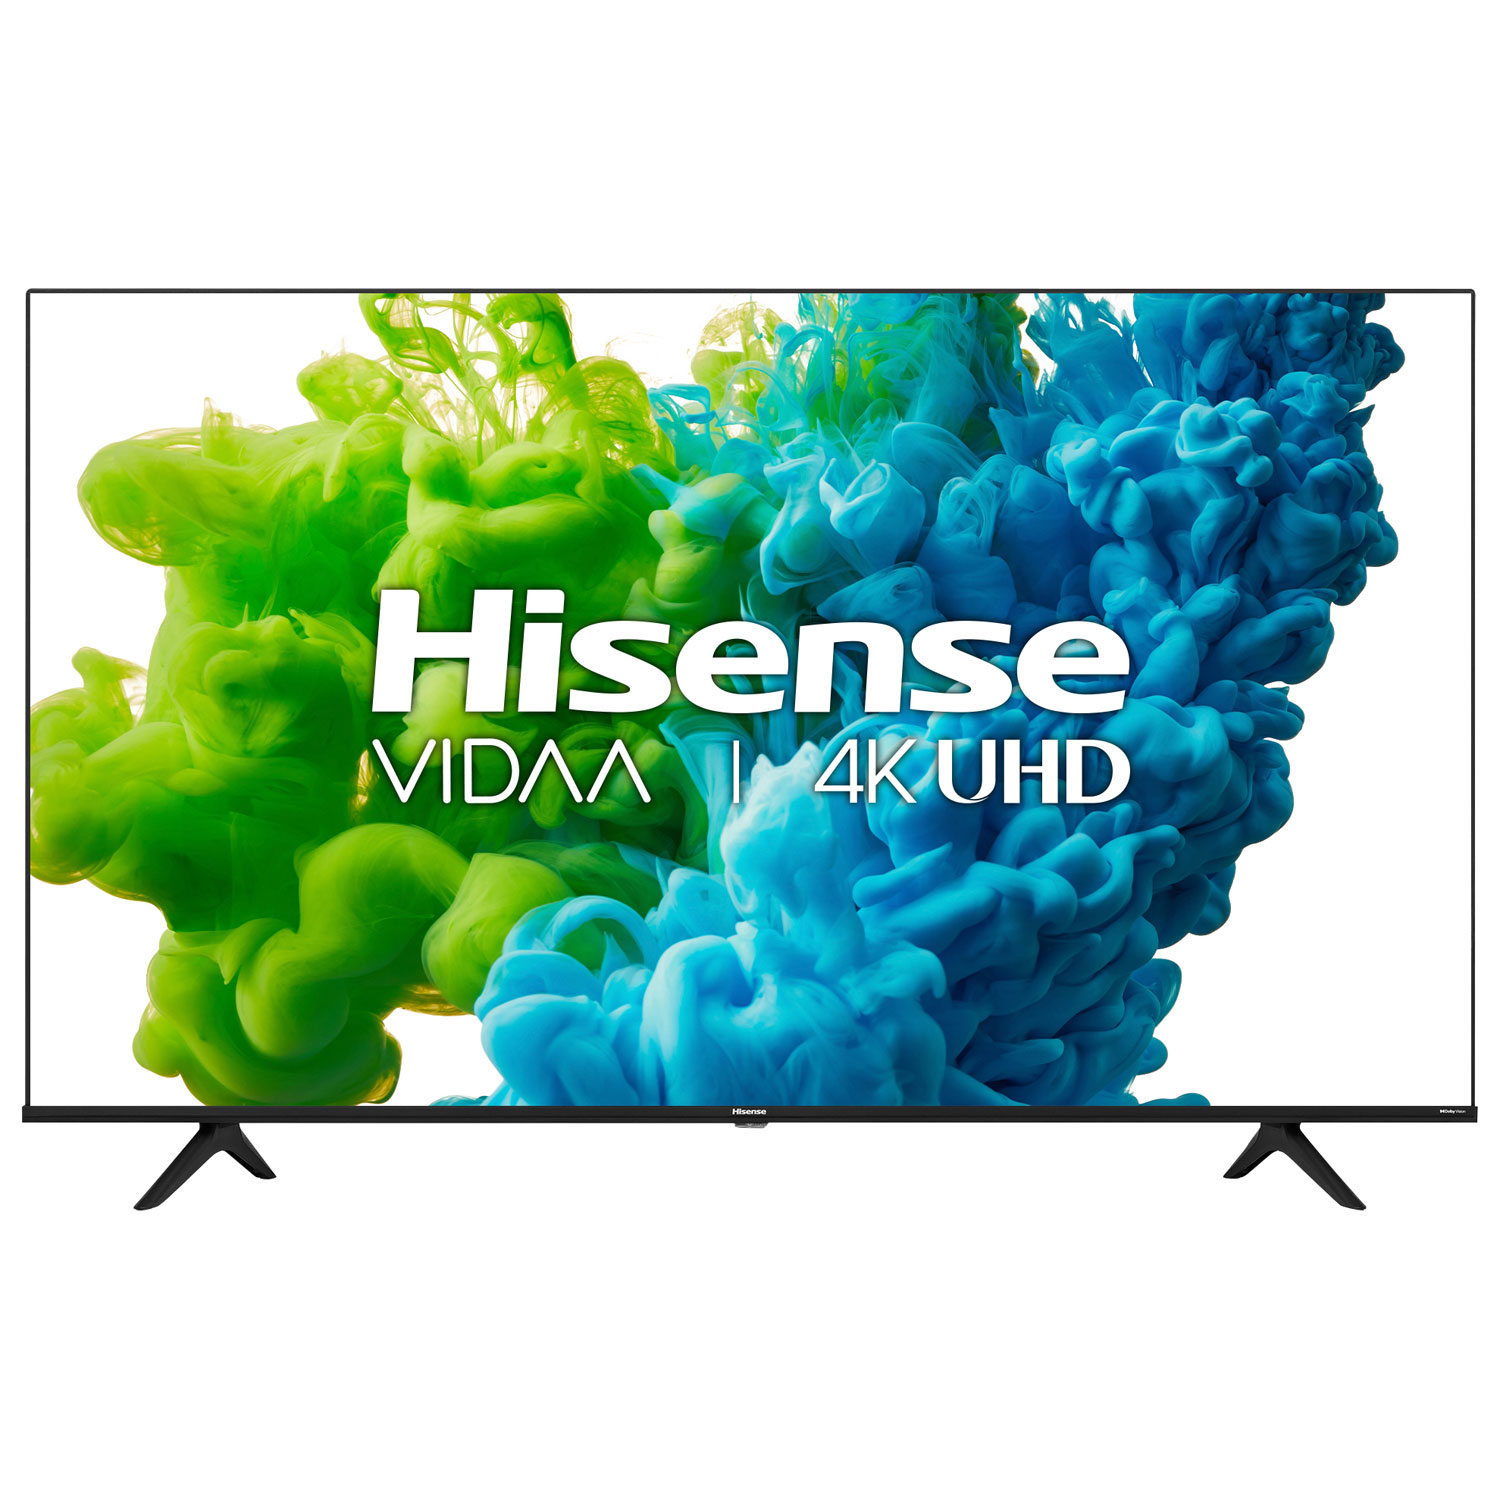 Hisense 65" 4K UHD HDR LED Vidaa Smart TV (65A6GV) - 2021